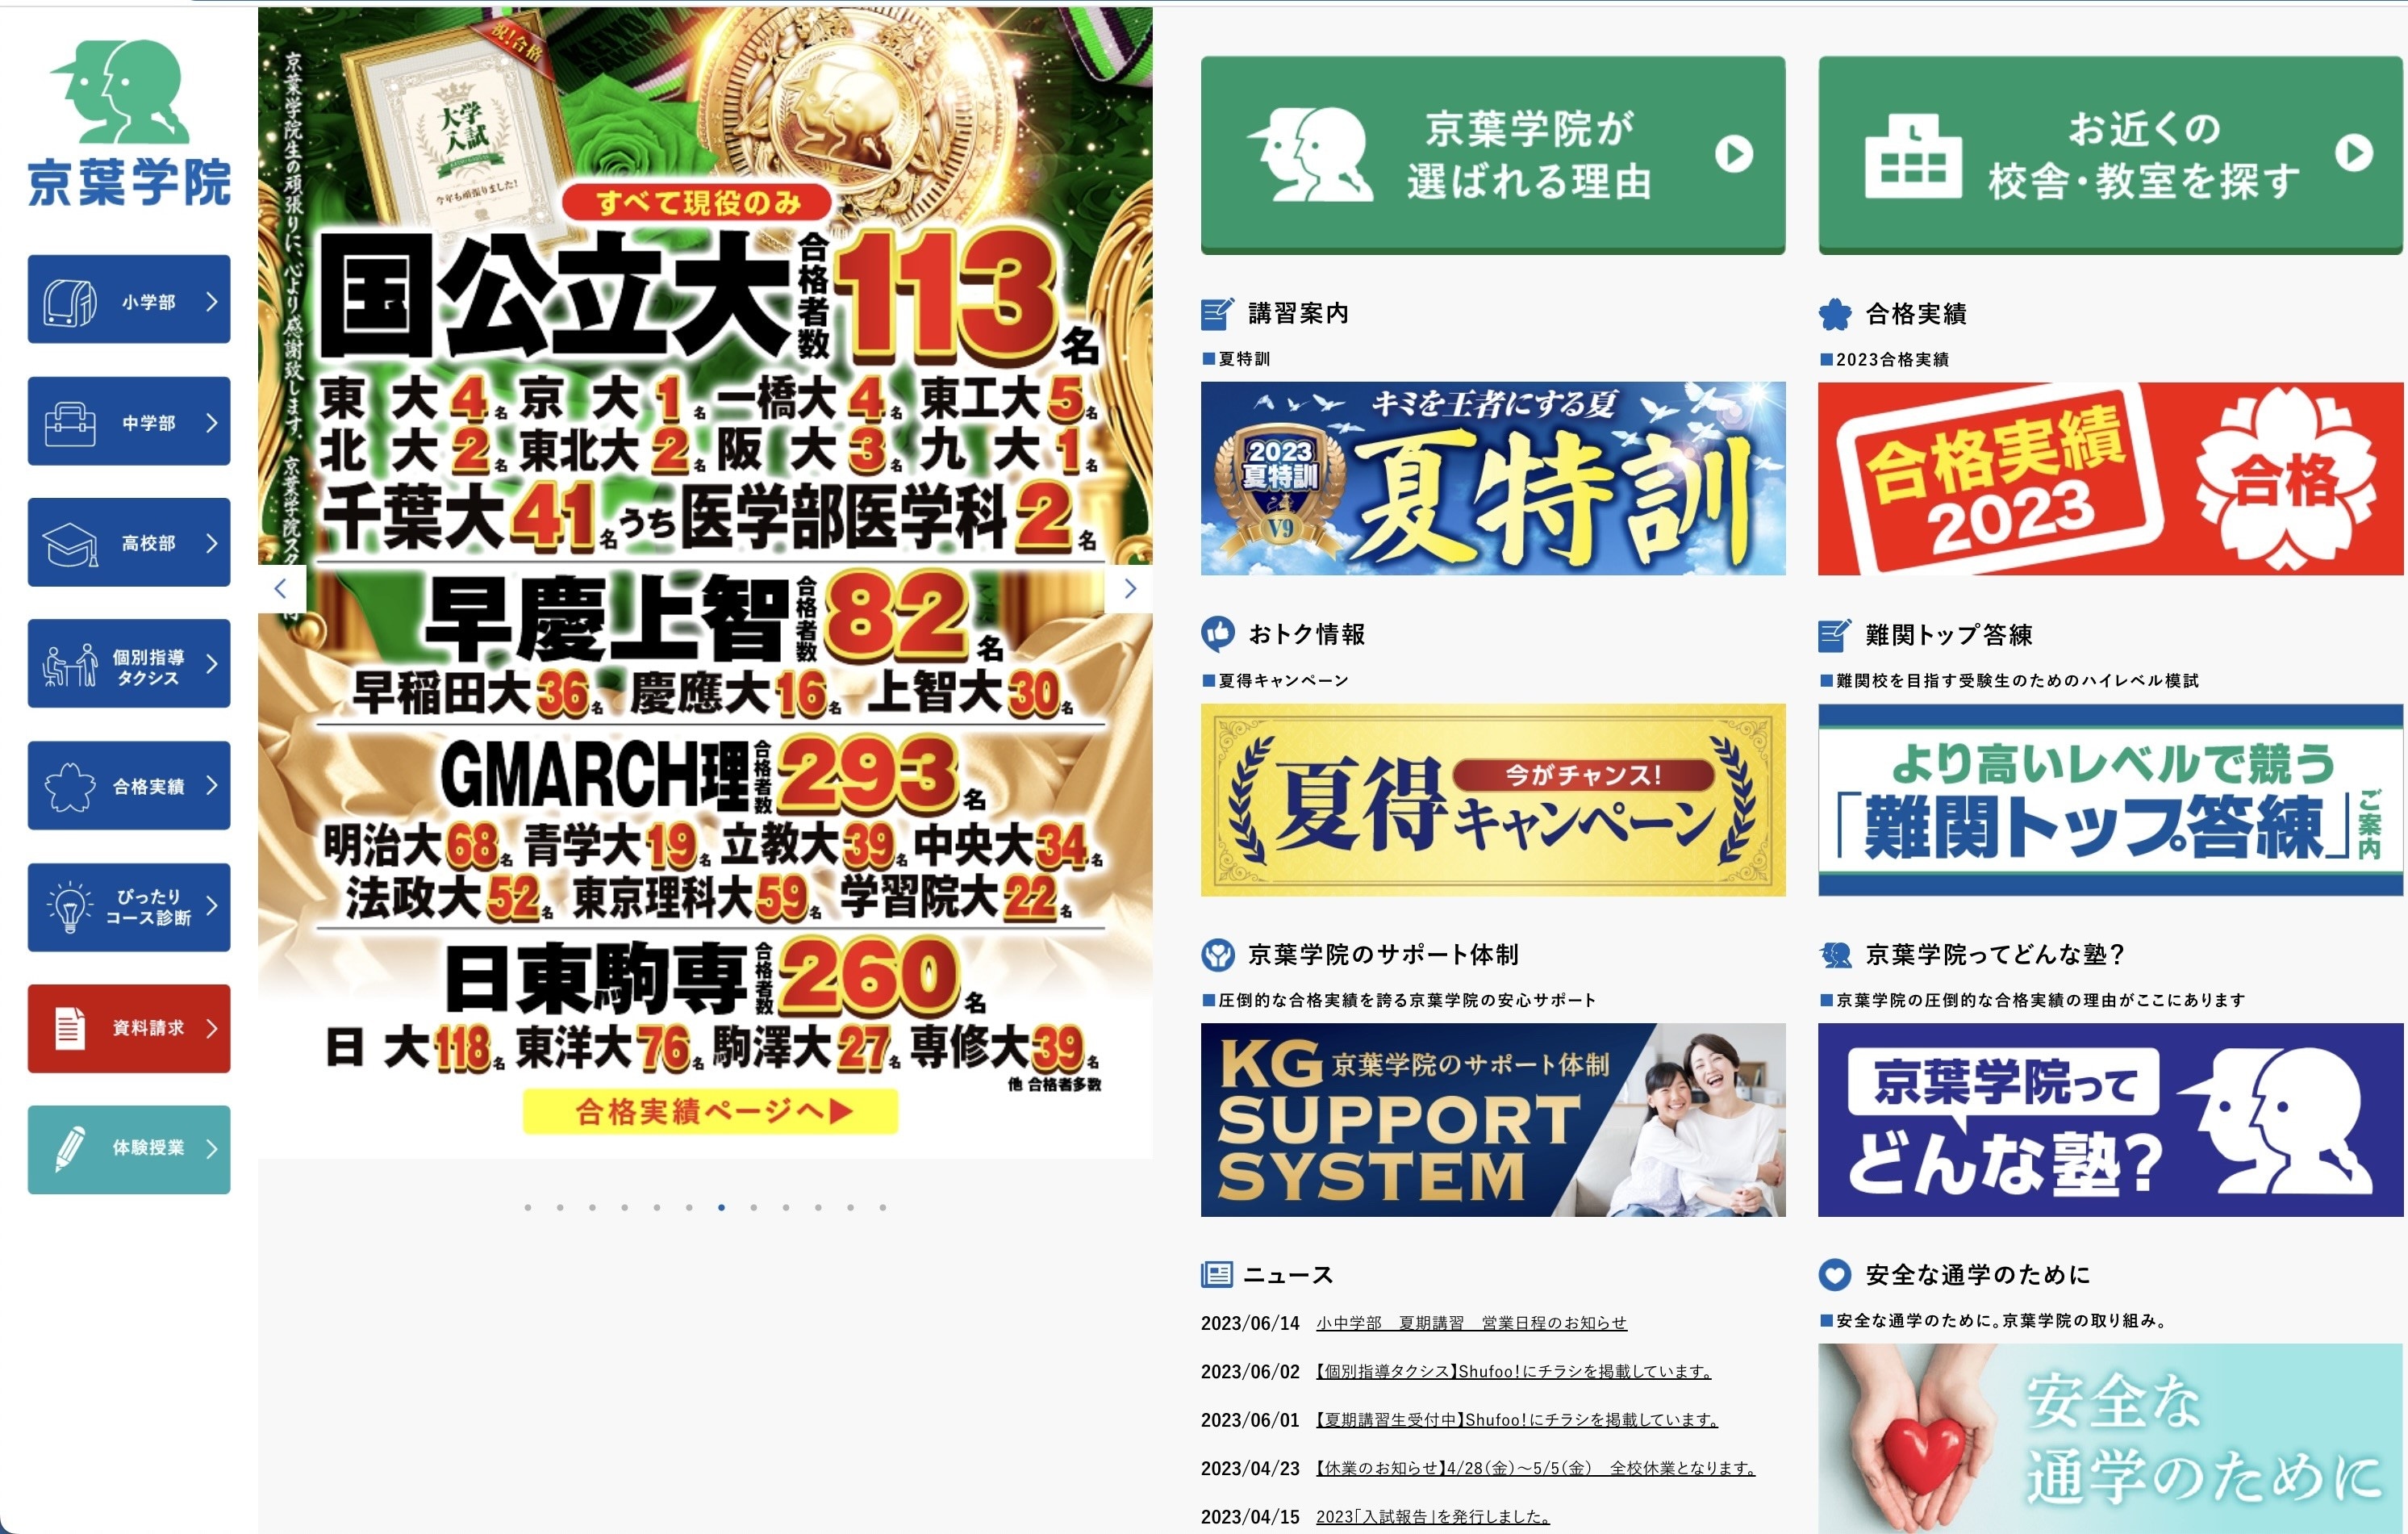 京葉学院のサイトのトップ画像